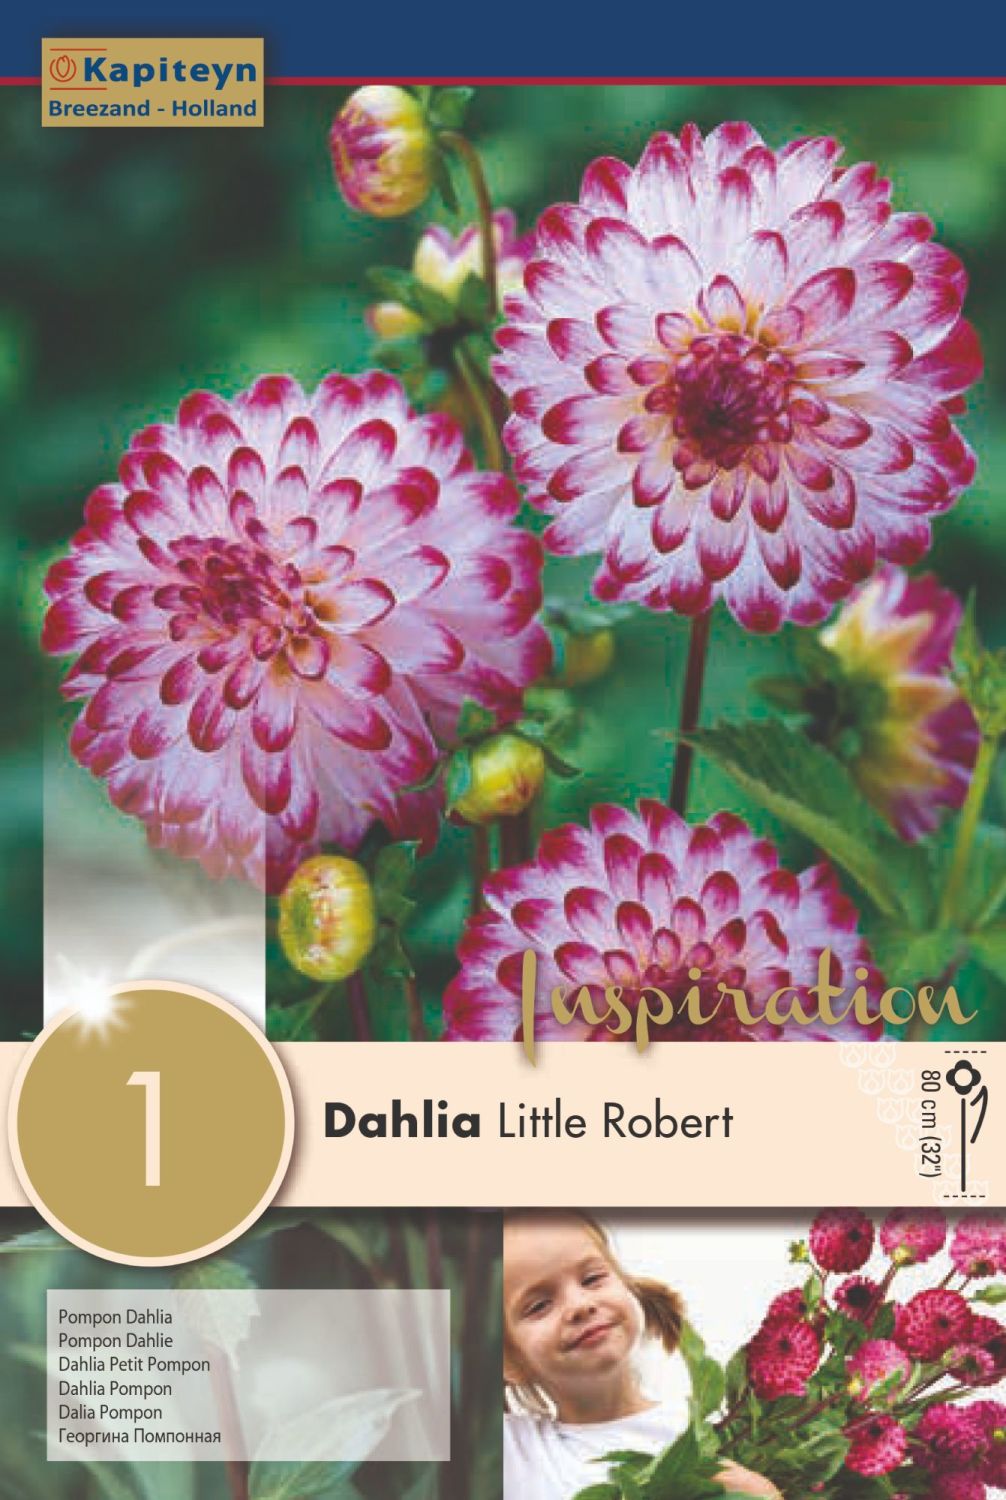 DAHLIA LITTLE ROBERT